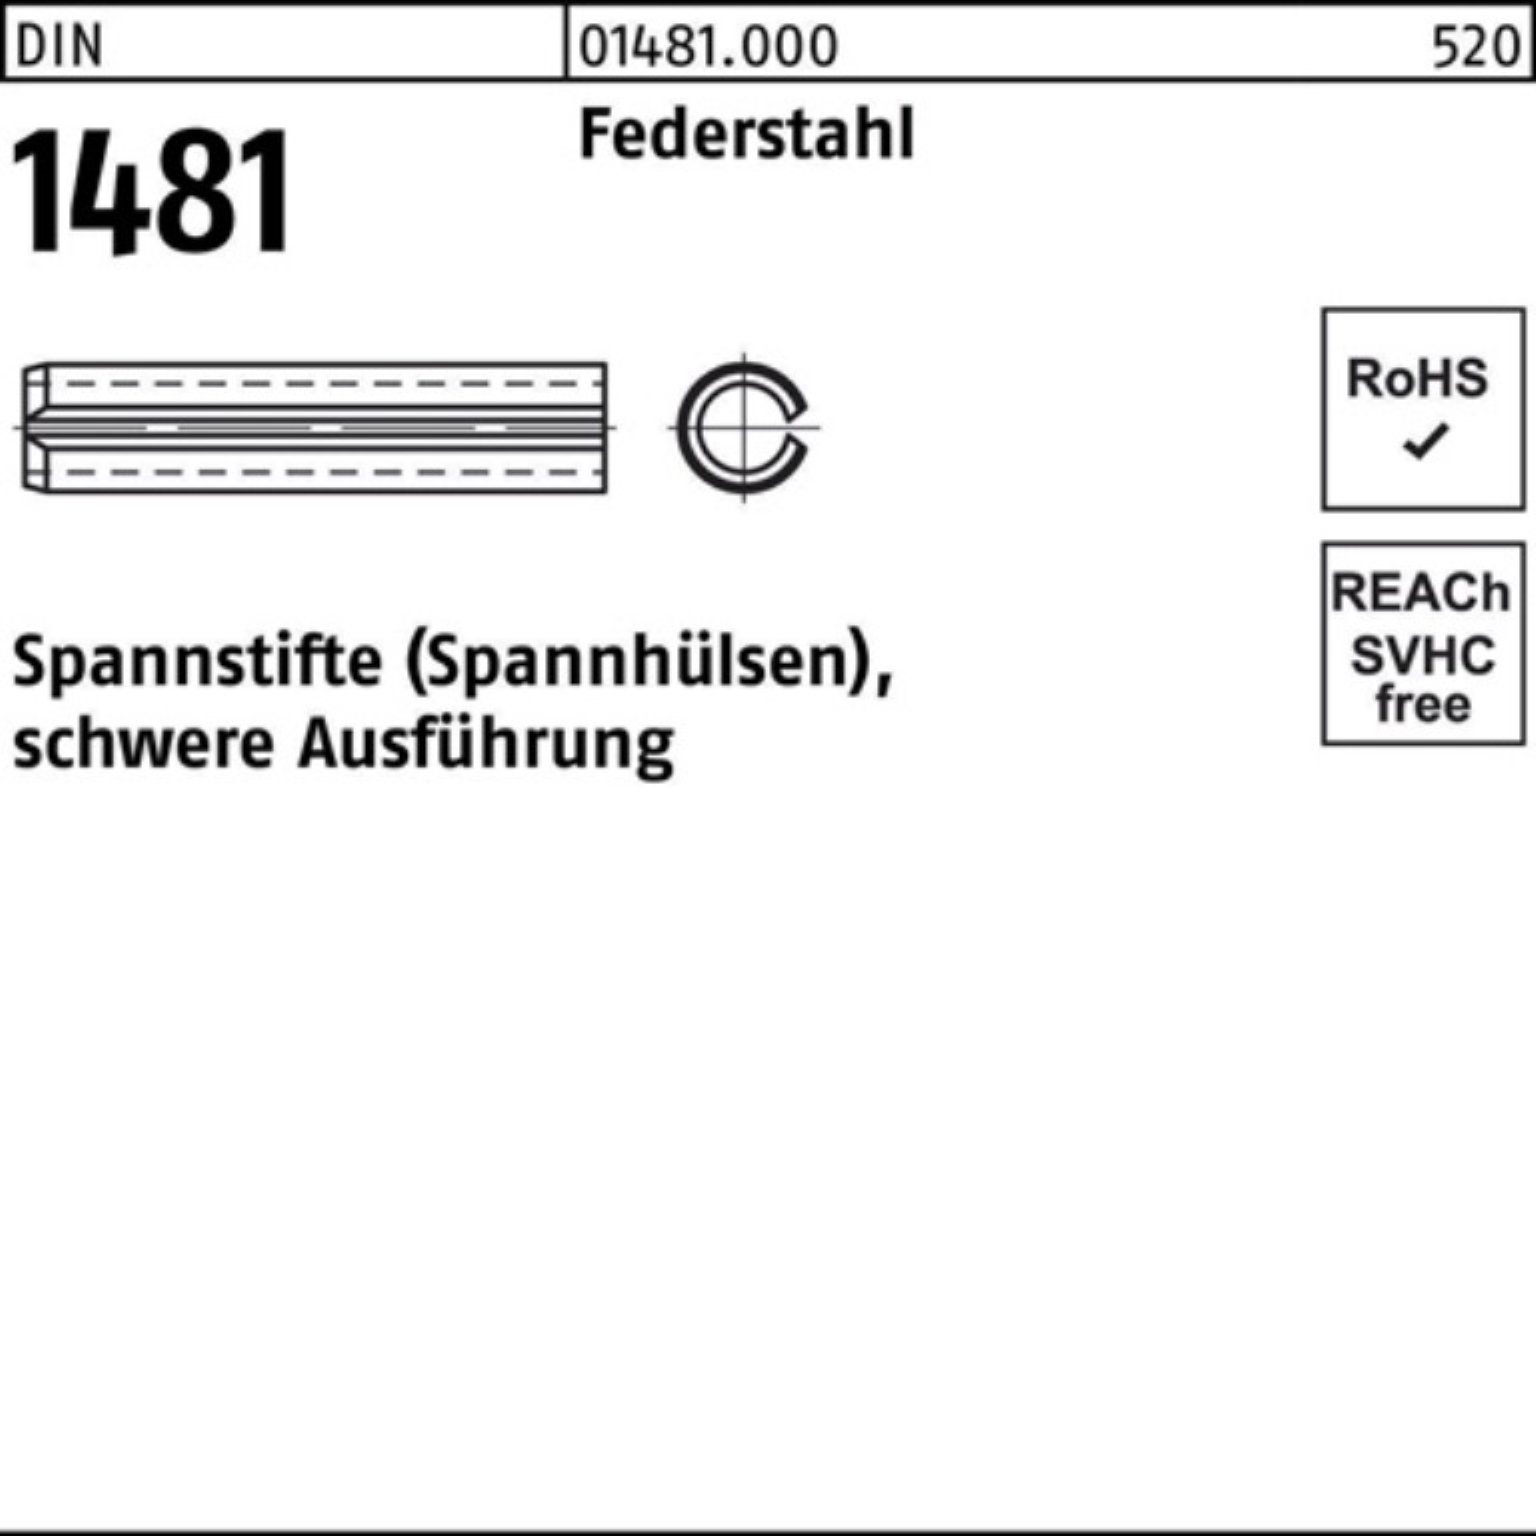 Reyher Spannstift 1000er DIN Ausführung 1 Pack 2x Federstahl 1481 14 schwere Spannstift